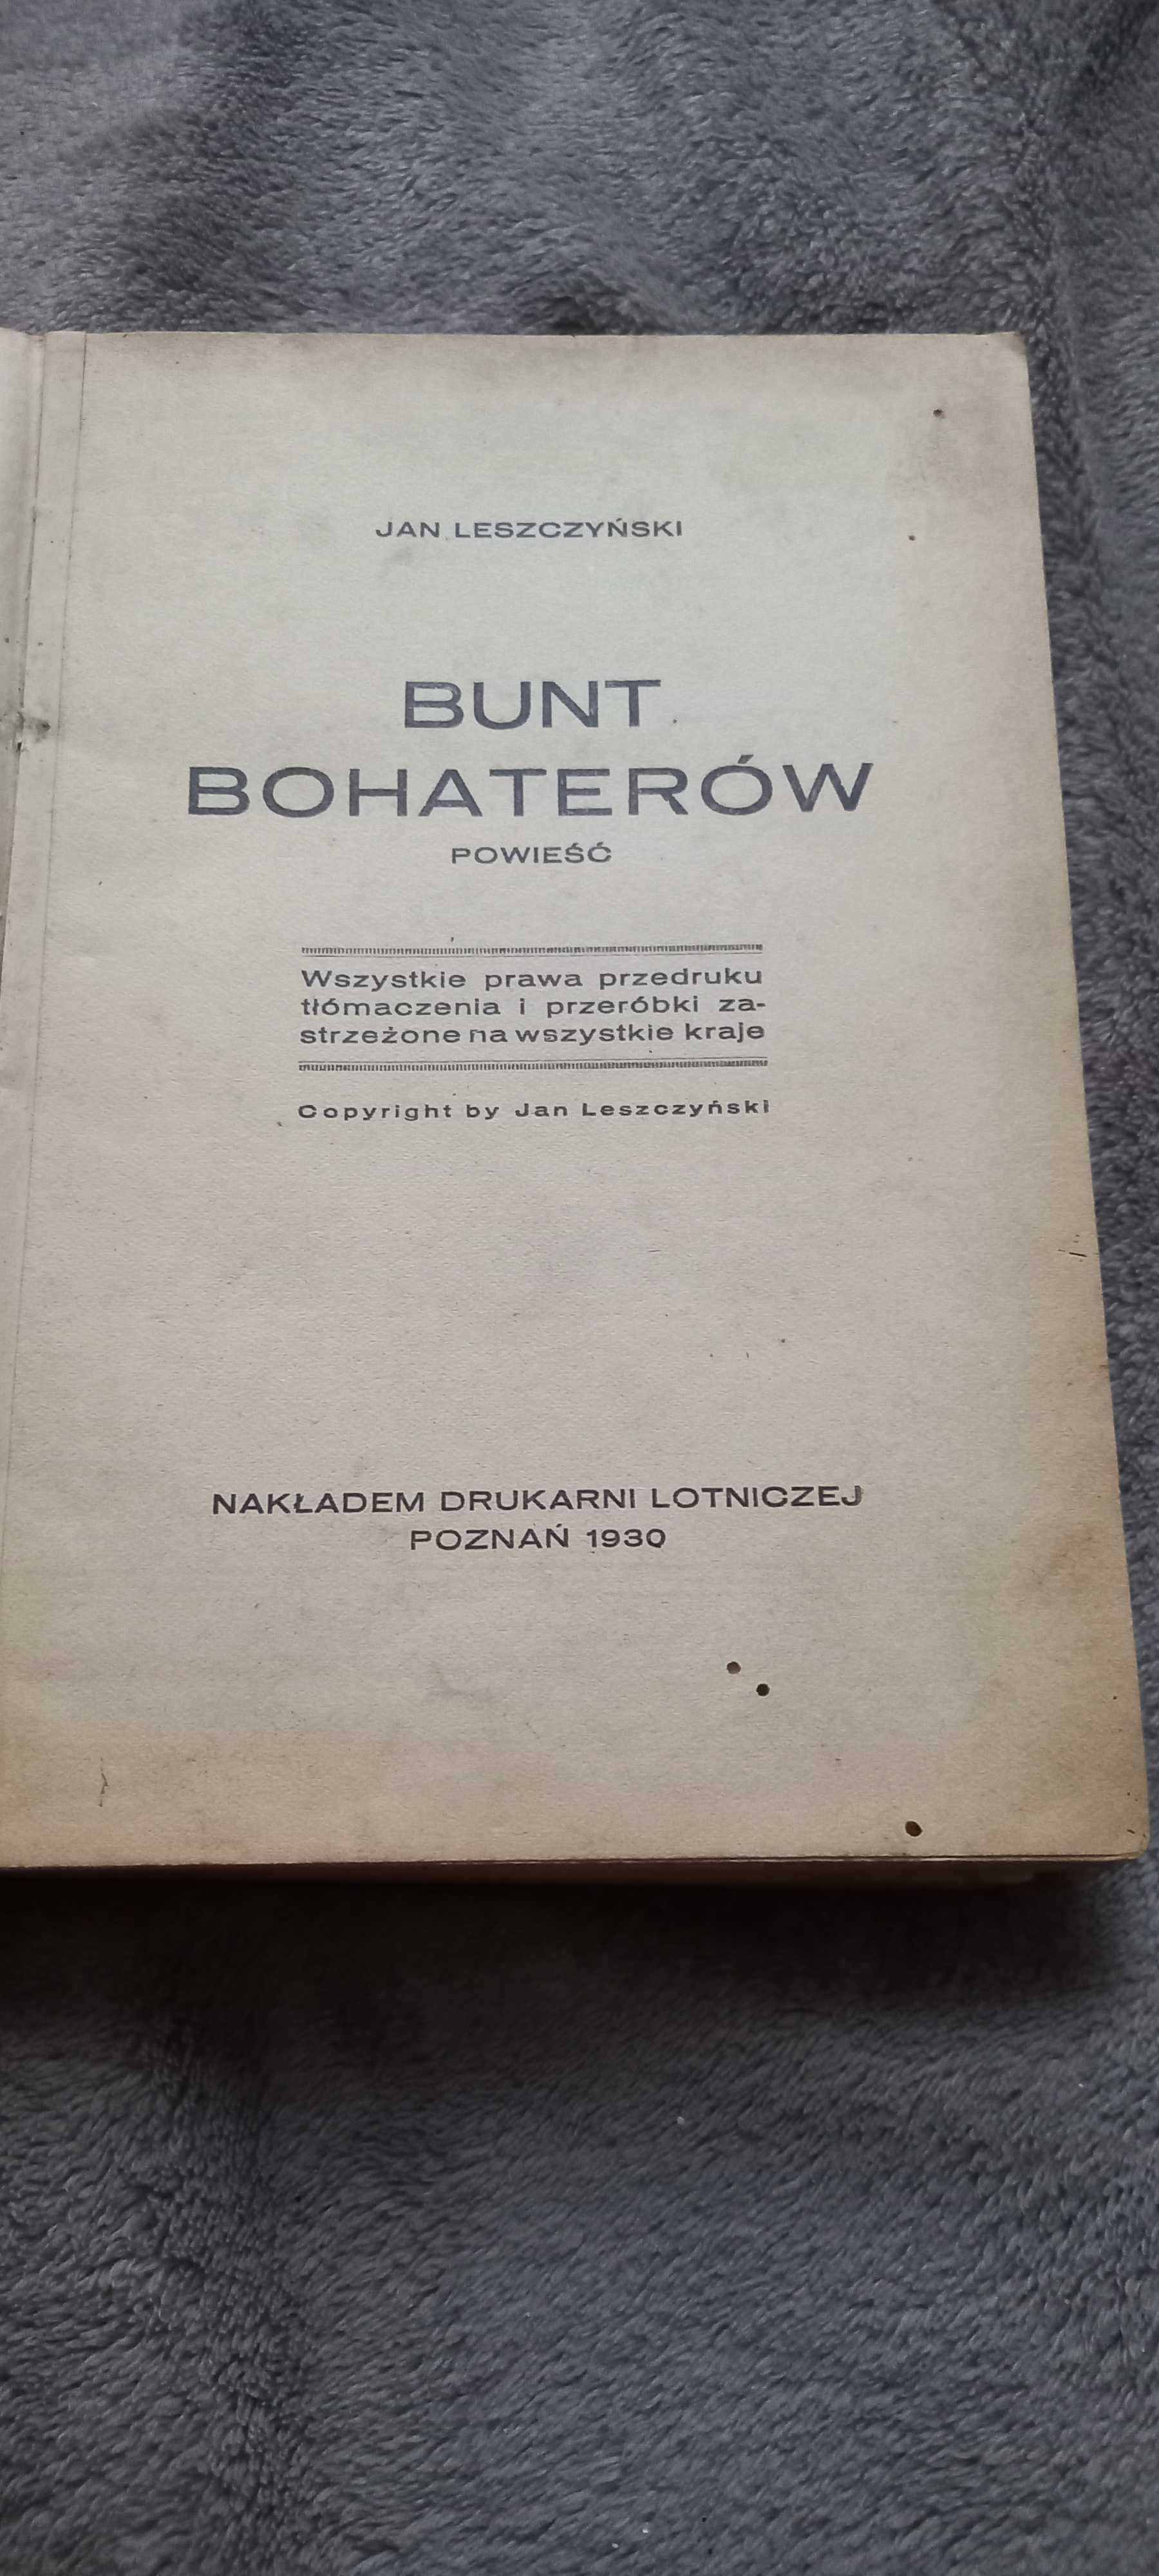 Bunt bohaterów Jan Leszczyński 1930 antyk starodruk